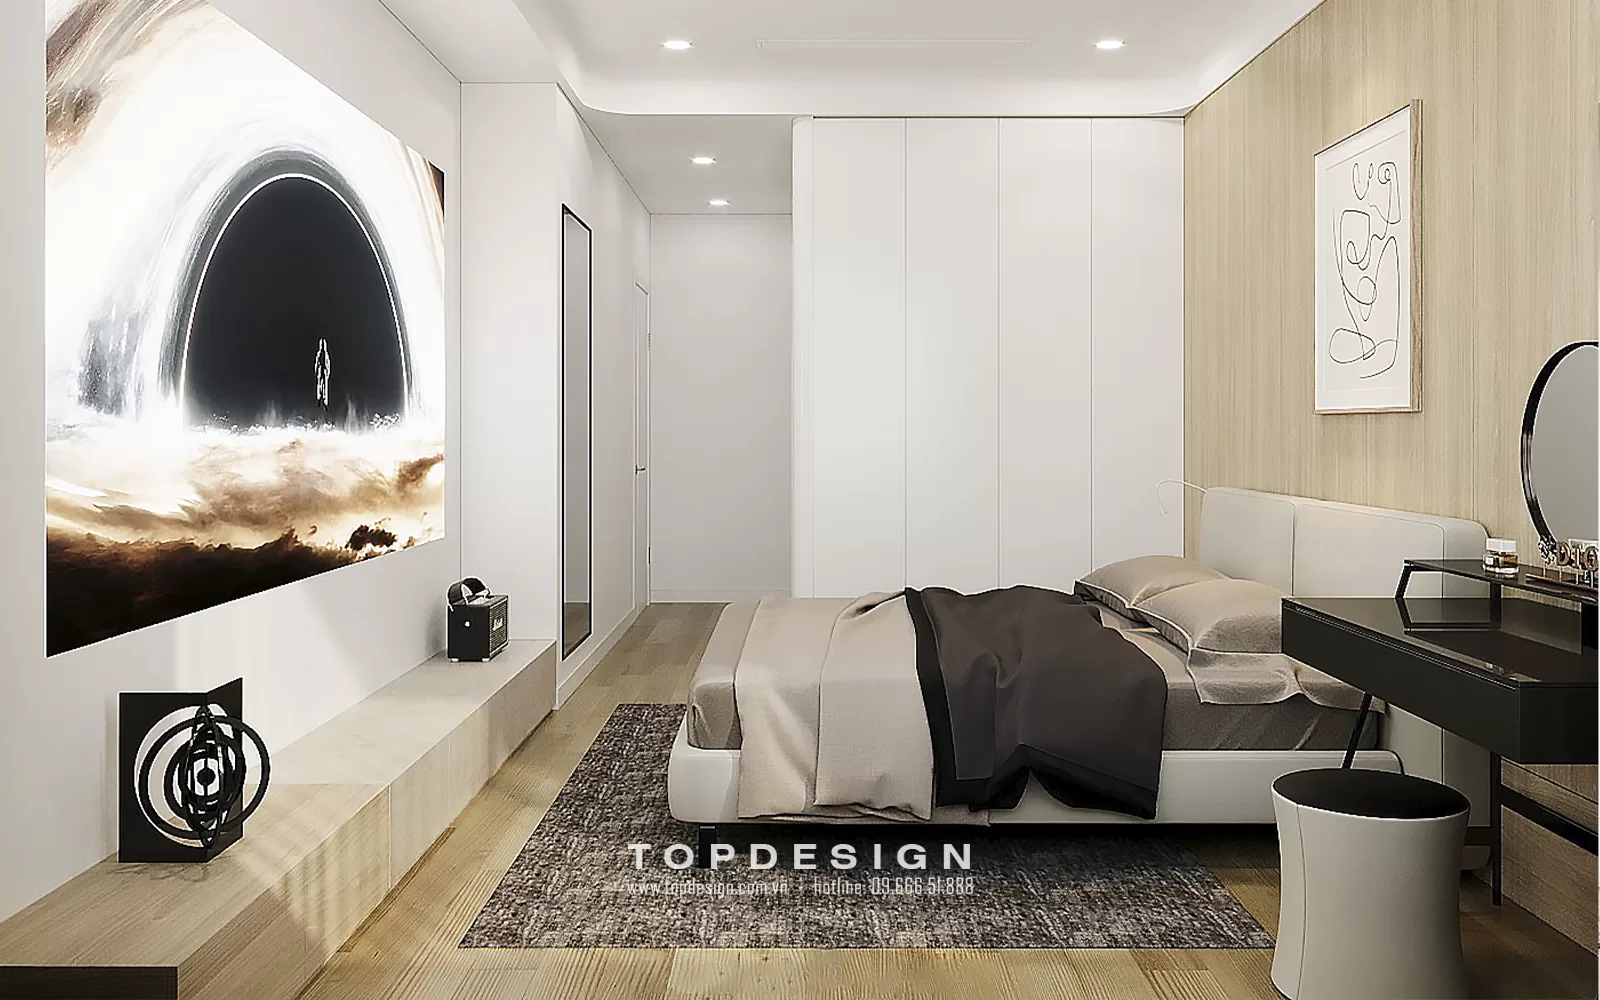 Thiết kế nội thất chung cư Bid Residences Hà Nội - TOPDESIGN - 7